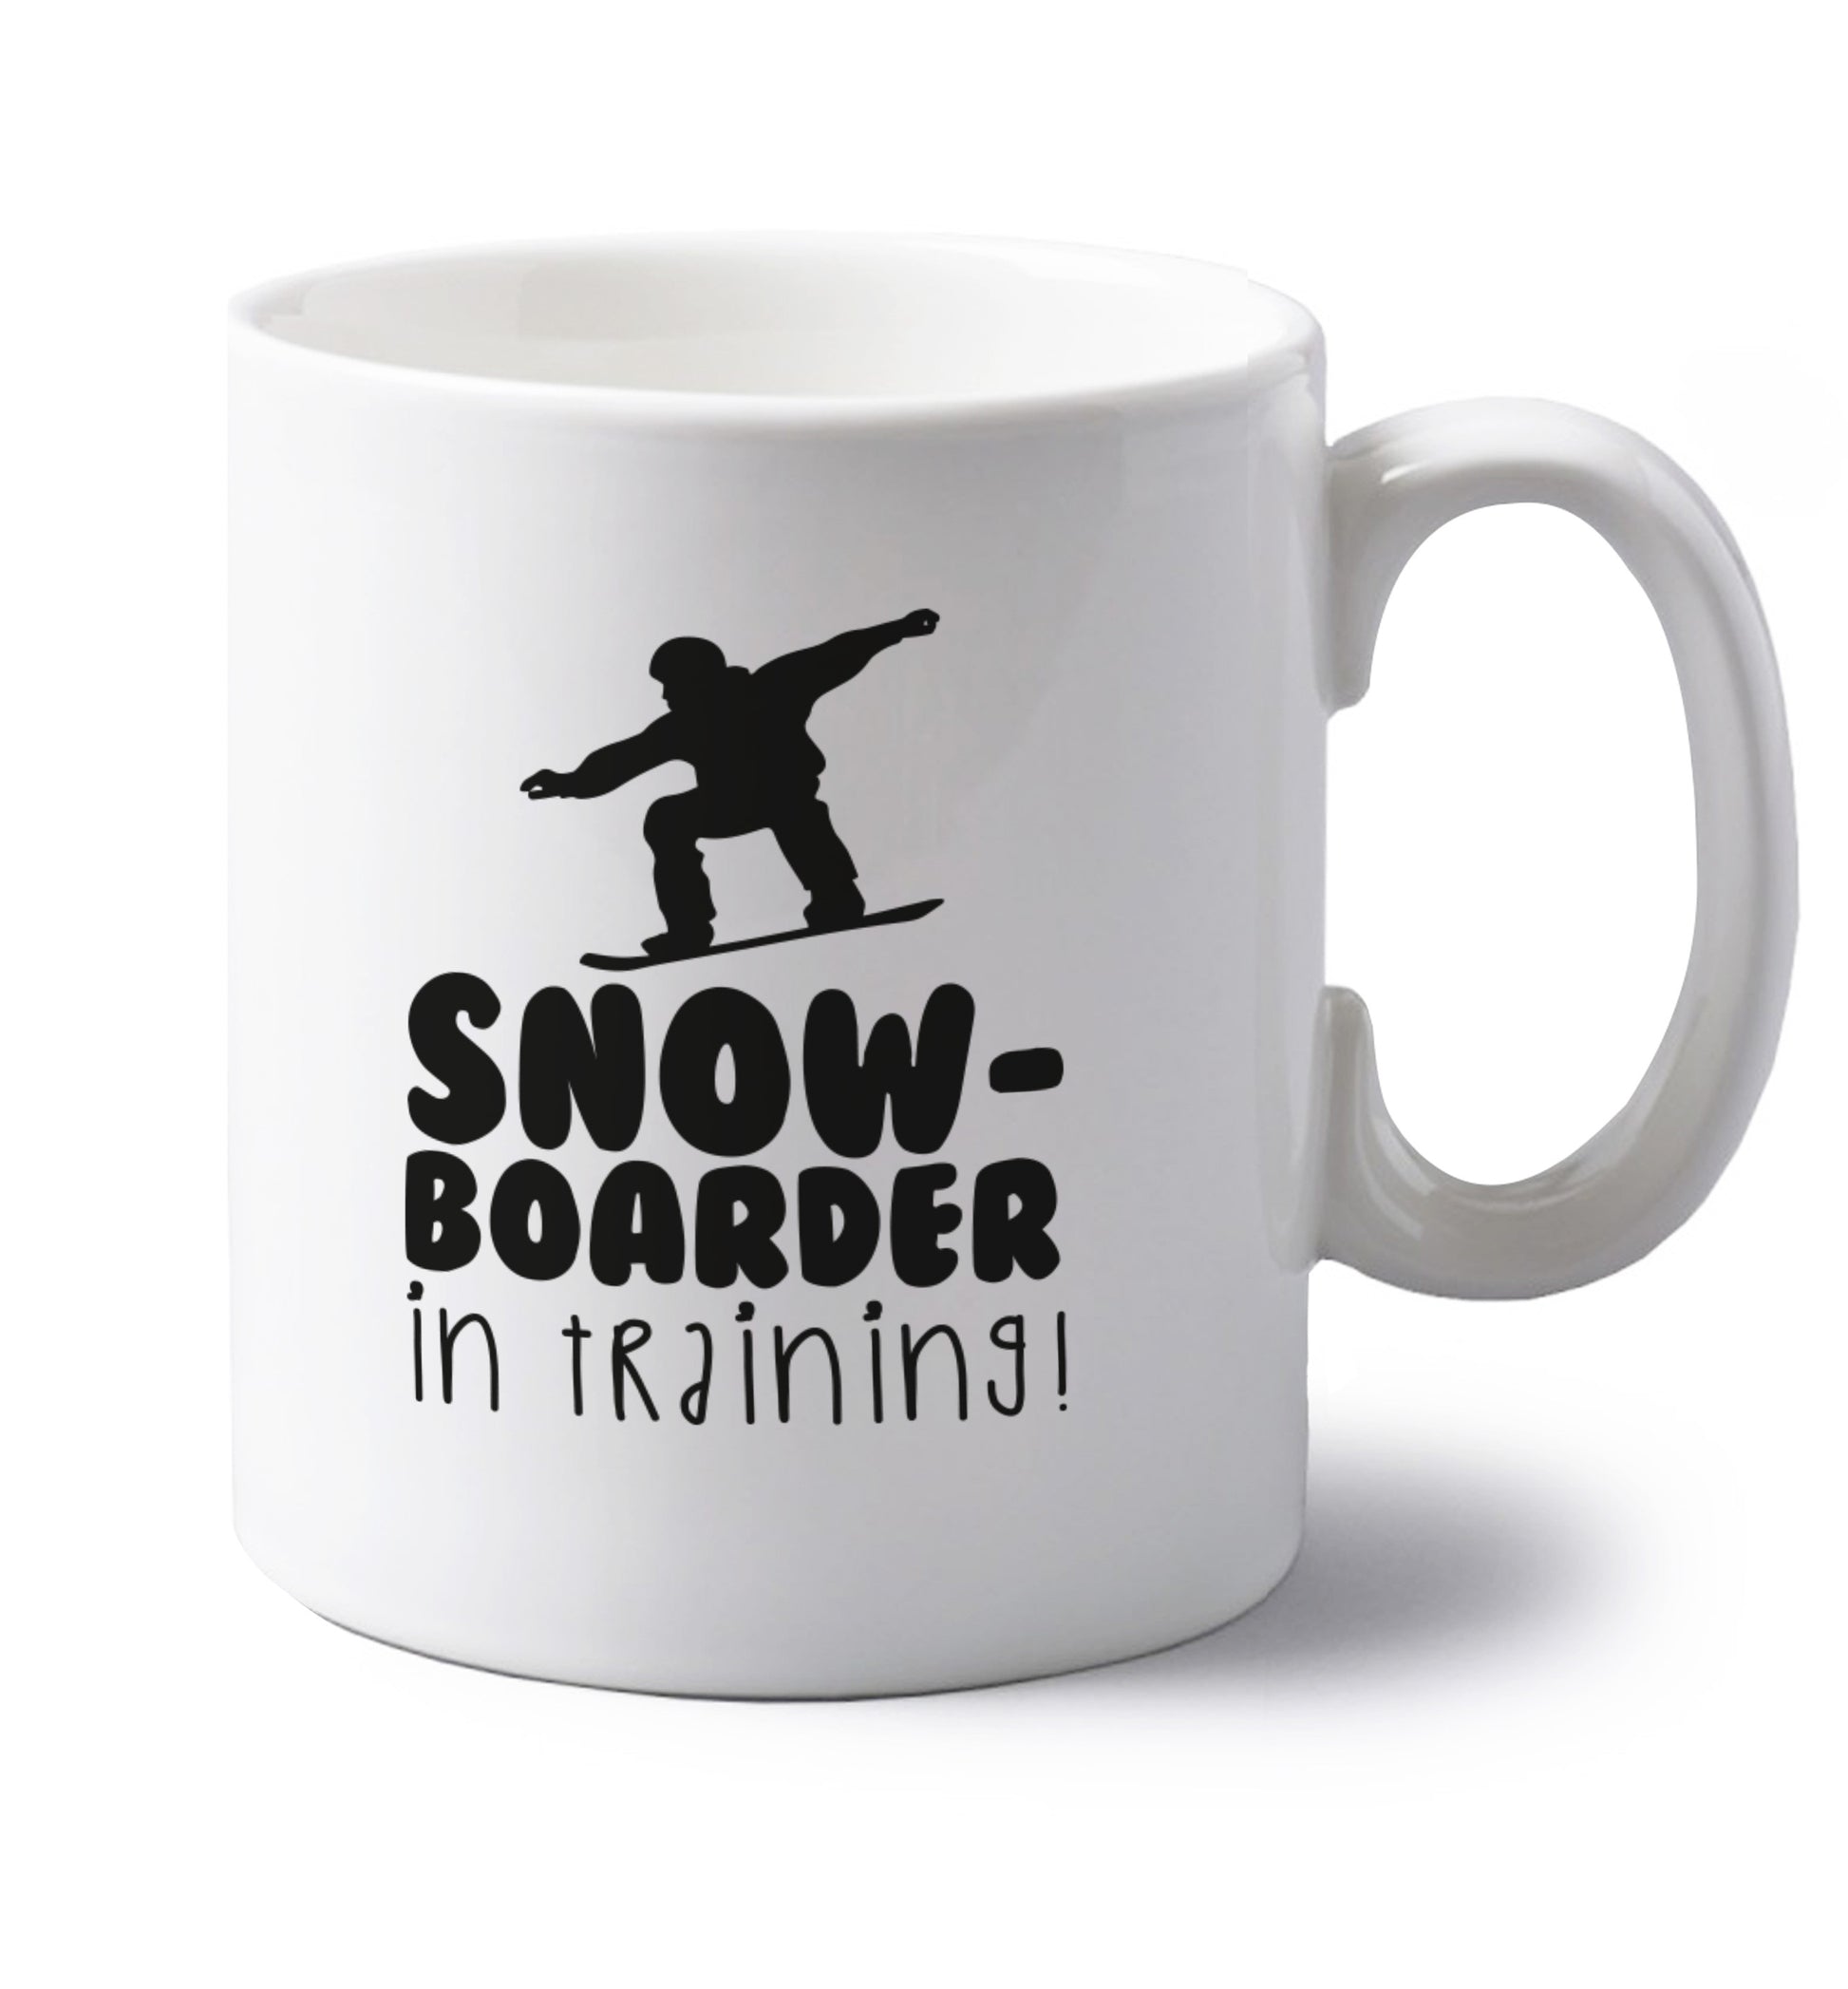 Snowboarder in training left handed white ceramic mug 